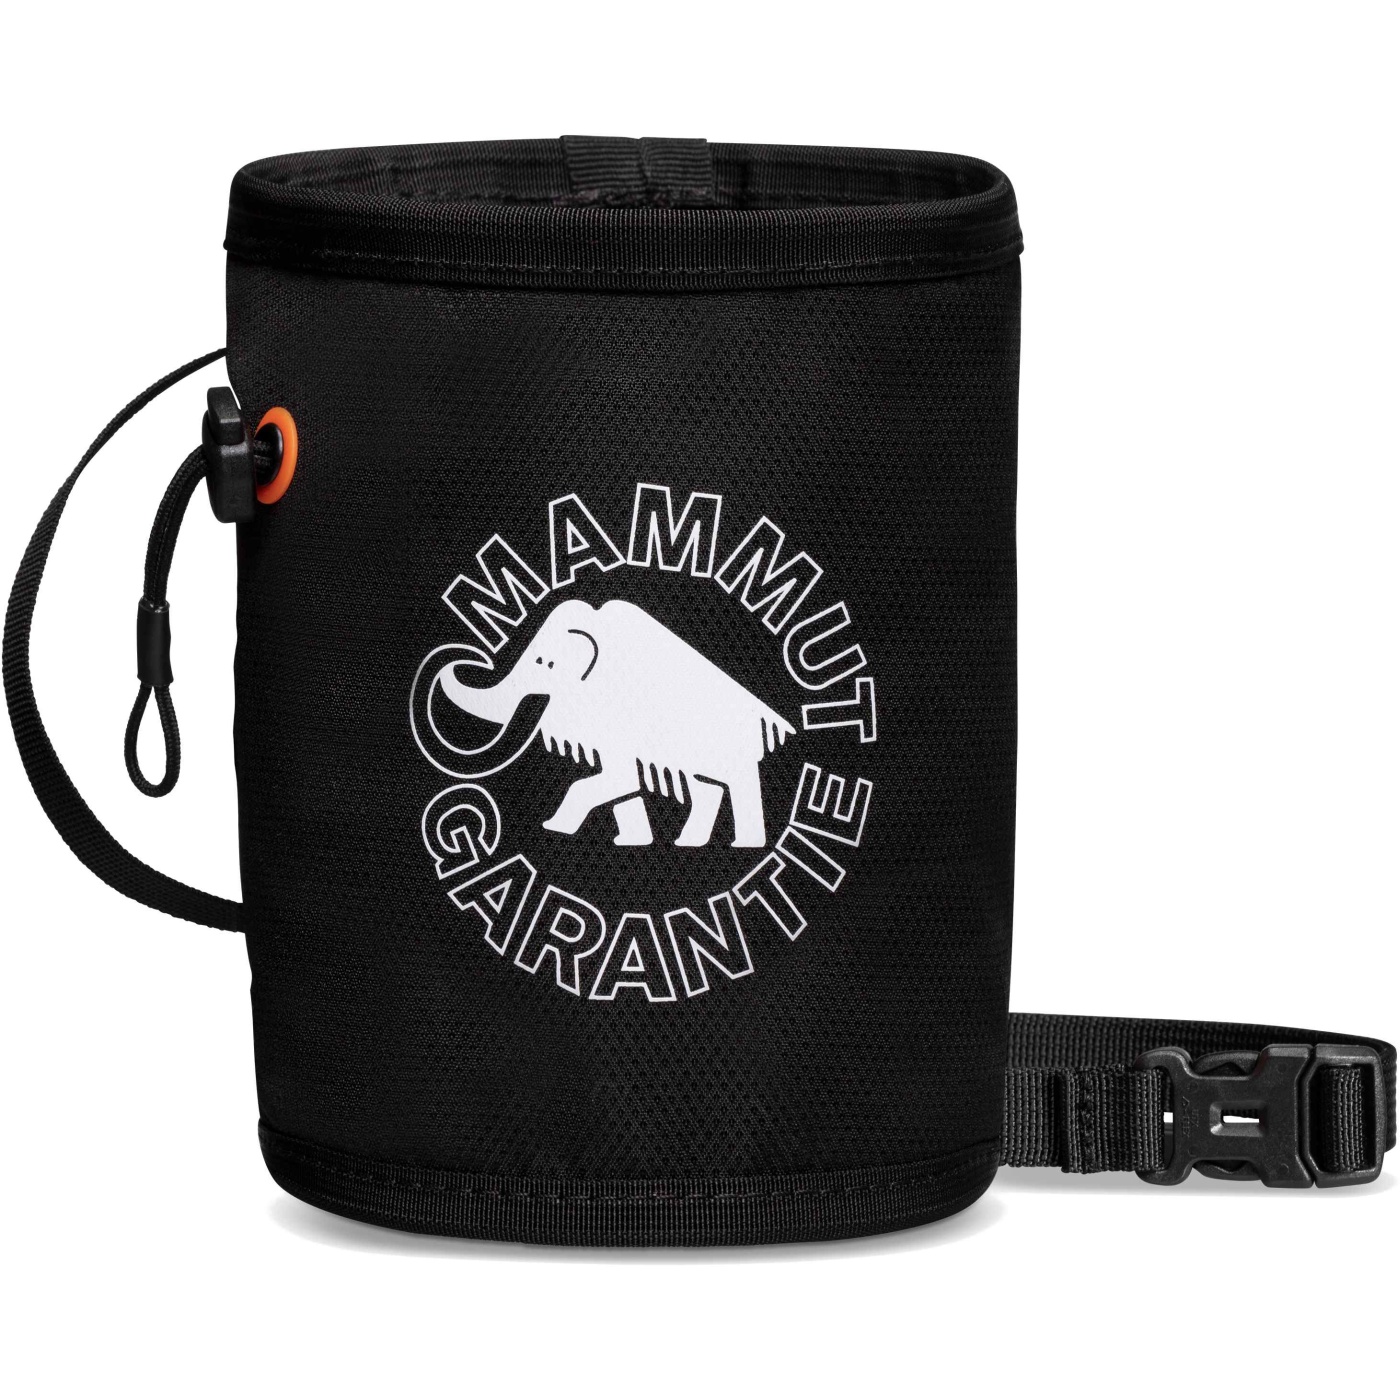 Produktbild von Mammut Gym Print Chalk Bag - schwarz